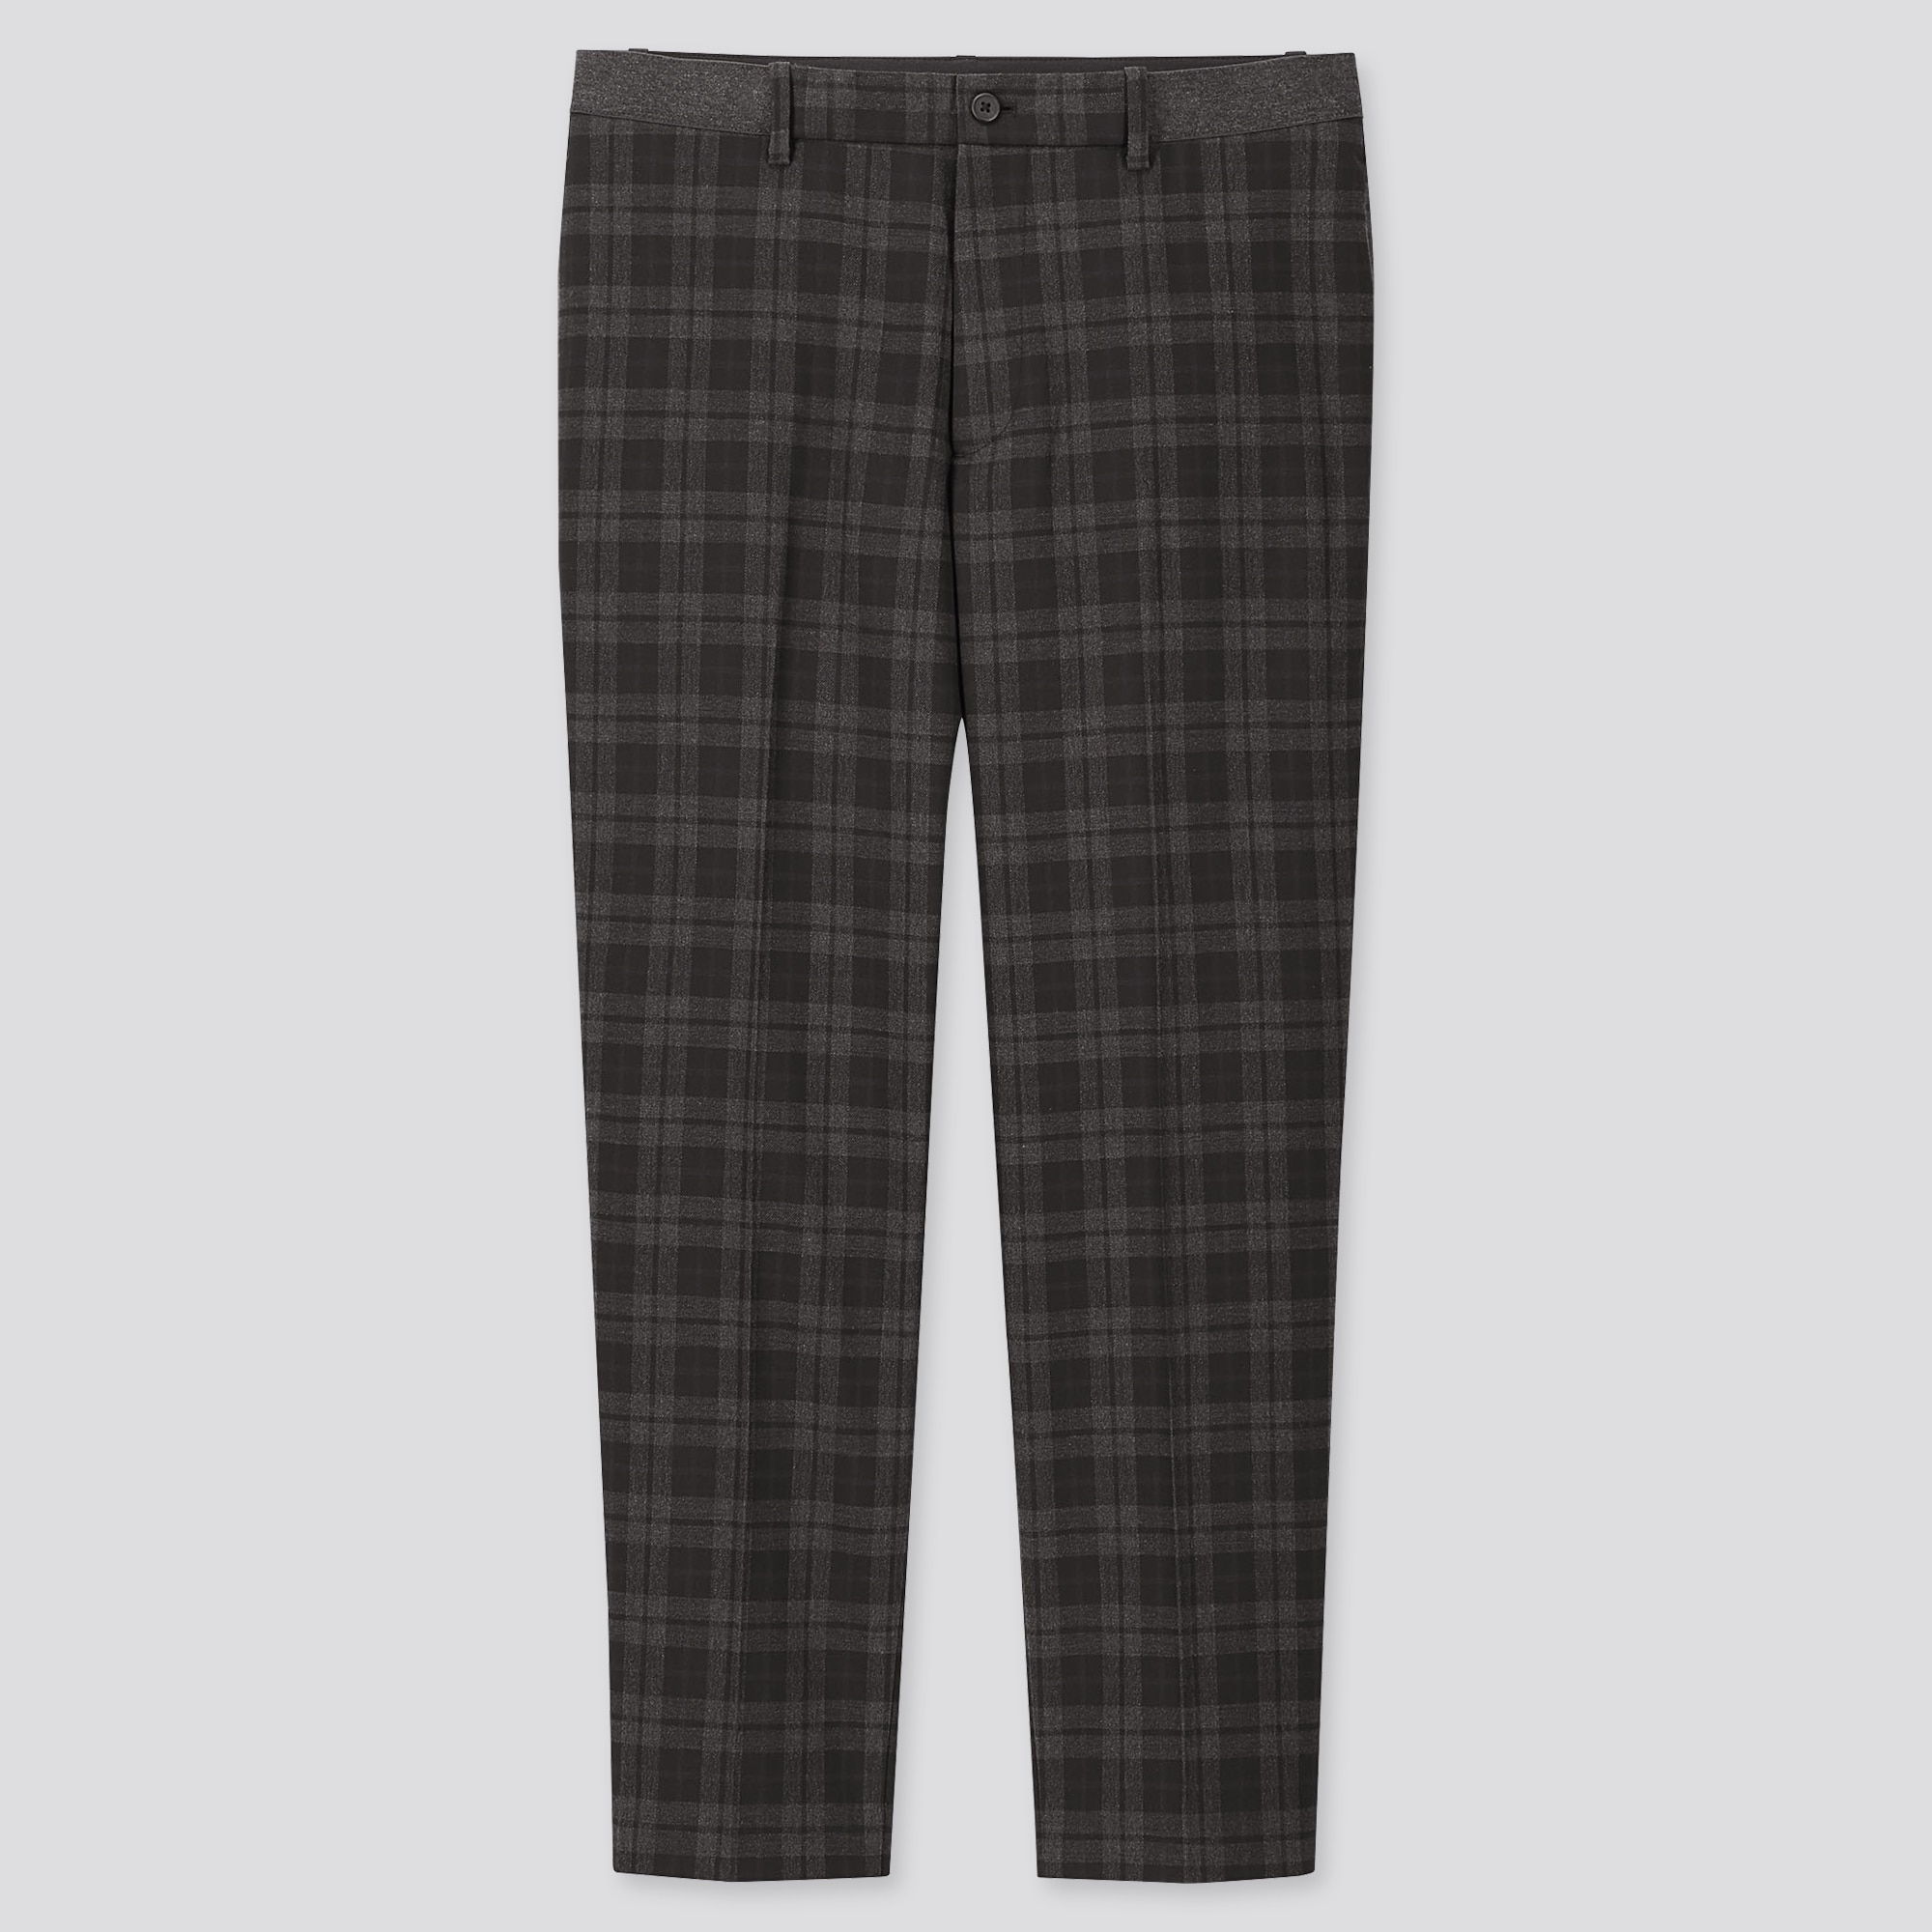 dark checkered pants